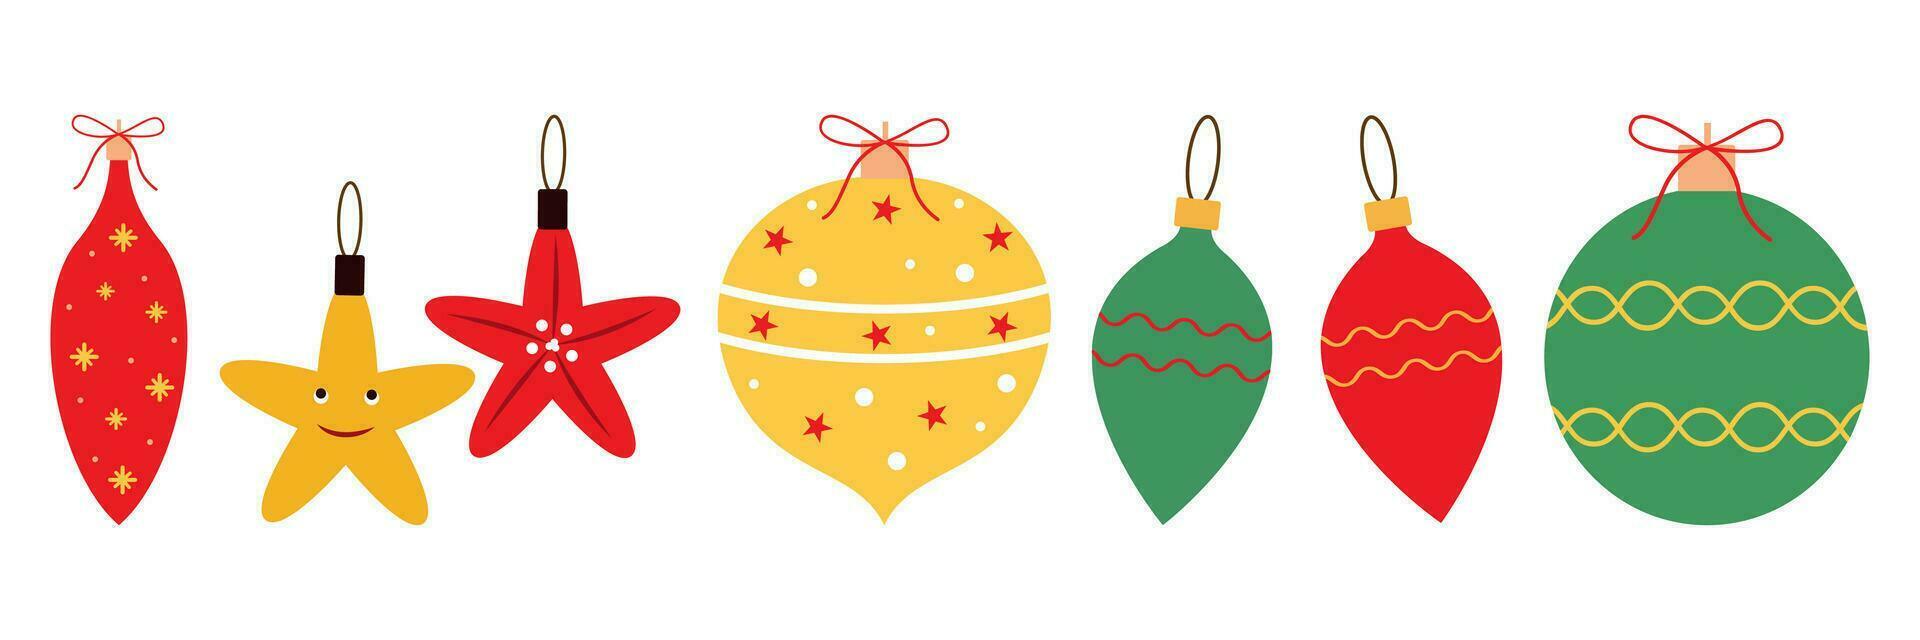 jul träd dekorationer isolerat på en vit bakgrund vektor illustration uppsättning. vinter- högtider och fester begrepp. bollar, stjärna, istapp dekor.